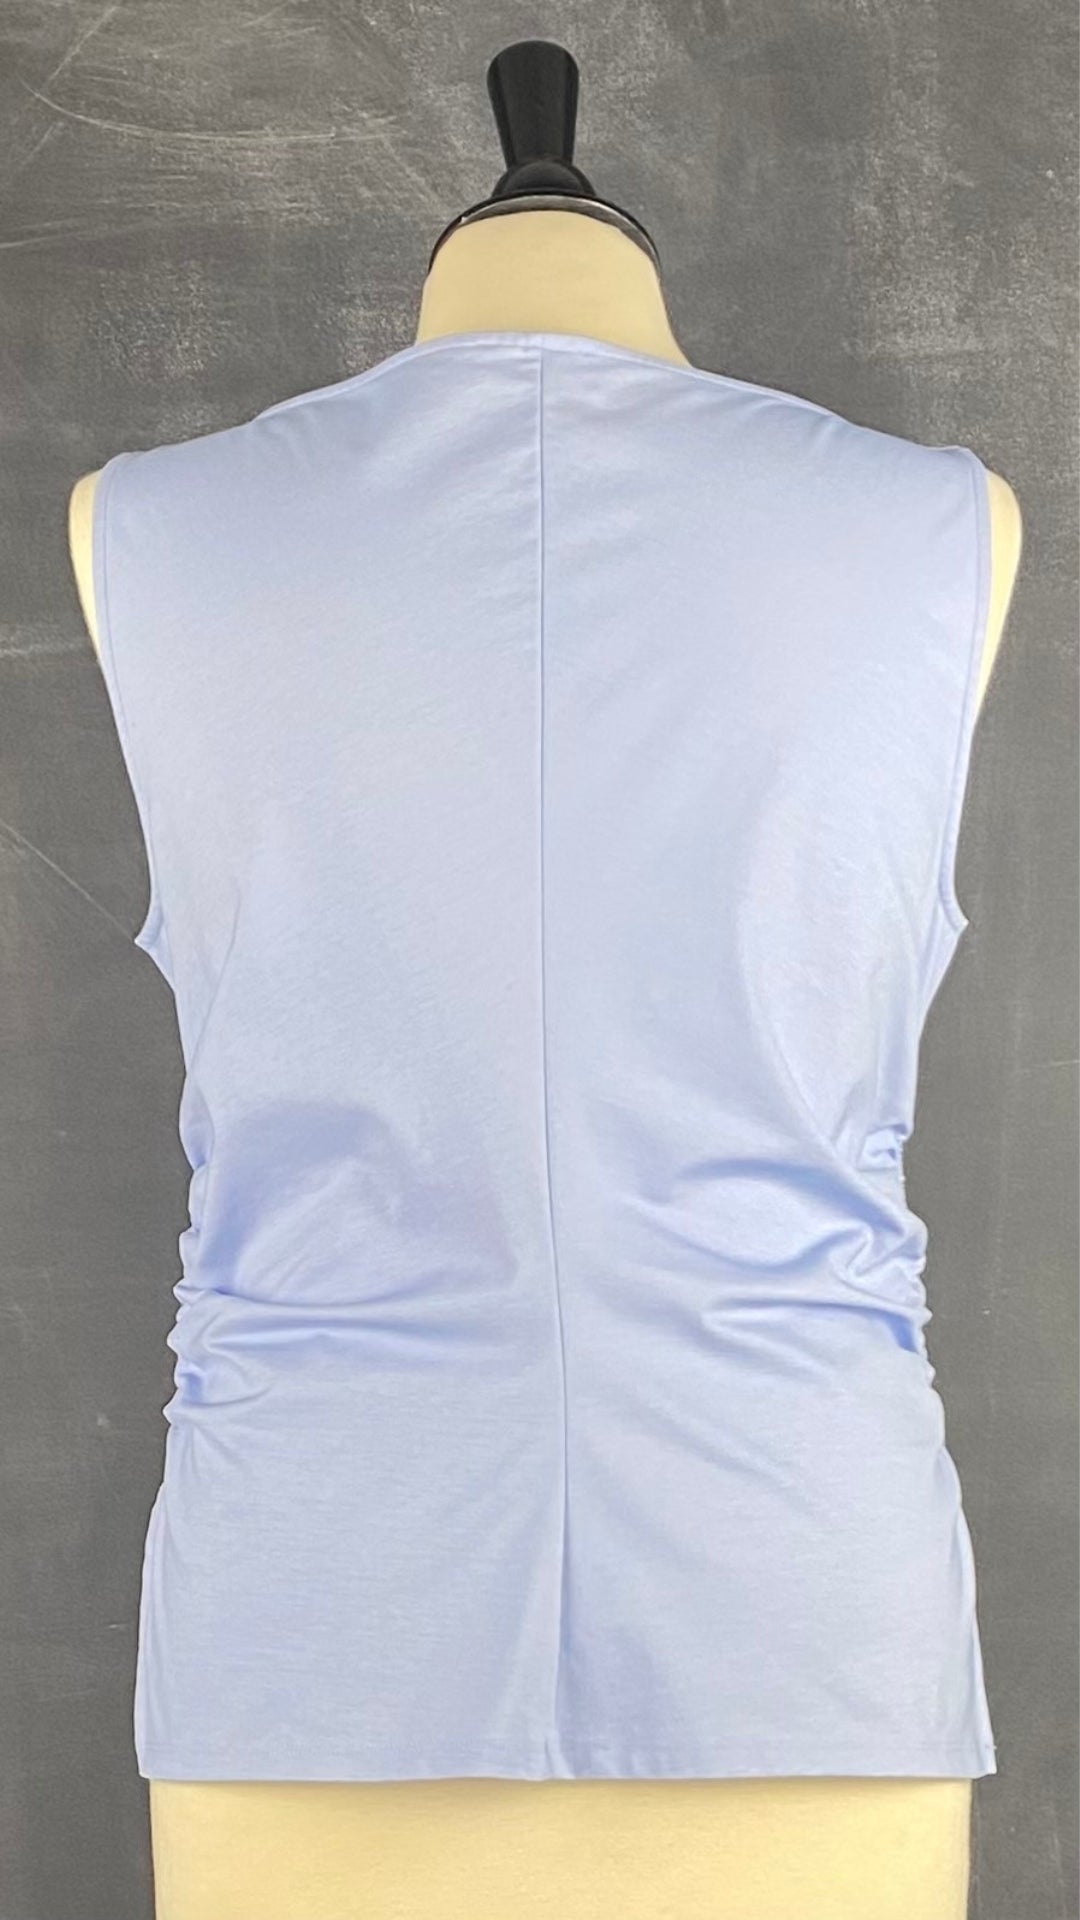 Camisole bleu doux plissée Cos, taille medium. Vue de dos.